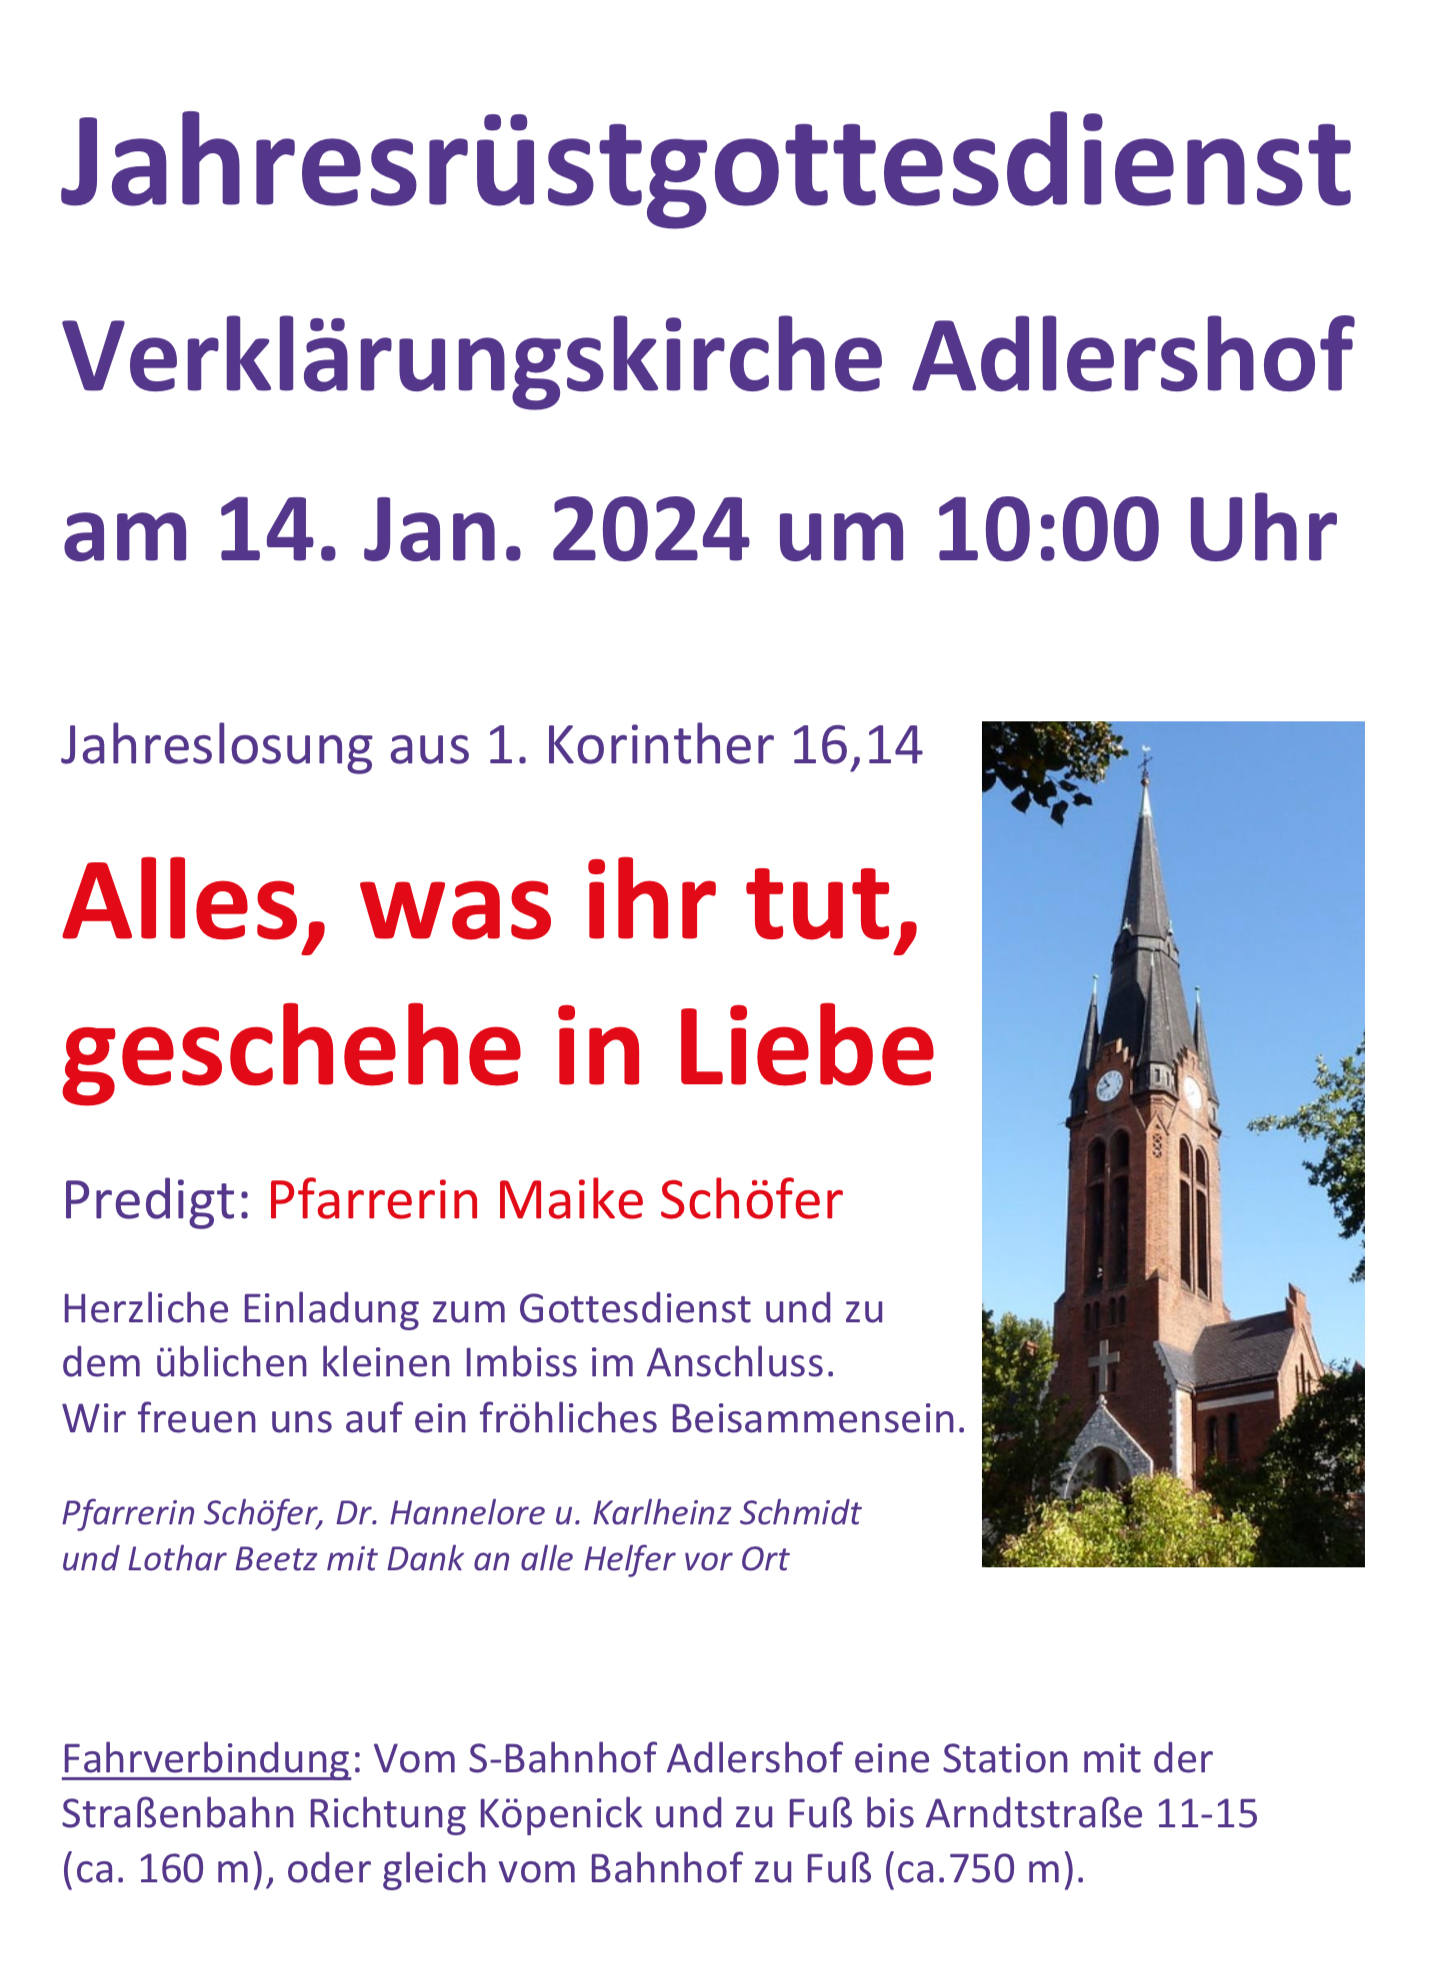 Jahresrüstgottesdienst am 14.01. um 10:00 Uhr, Verklärungskirche Adlershof